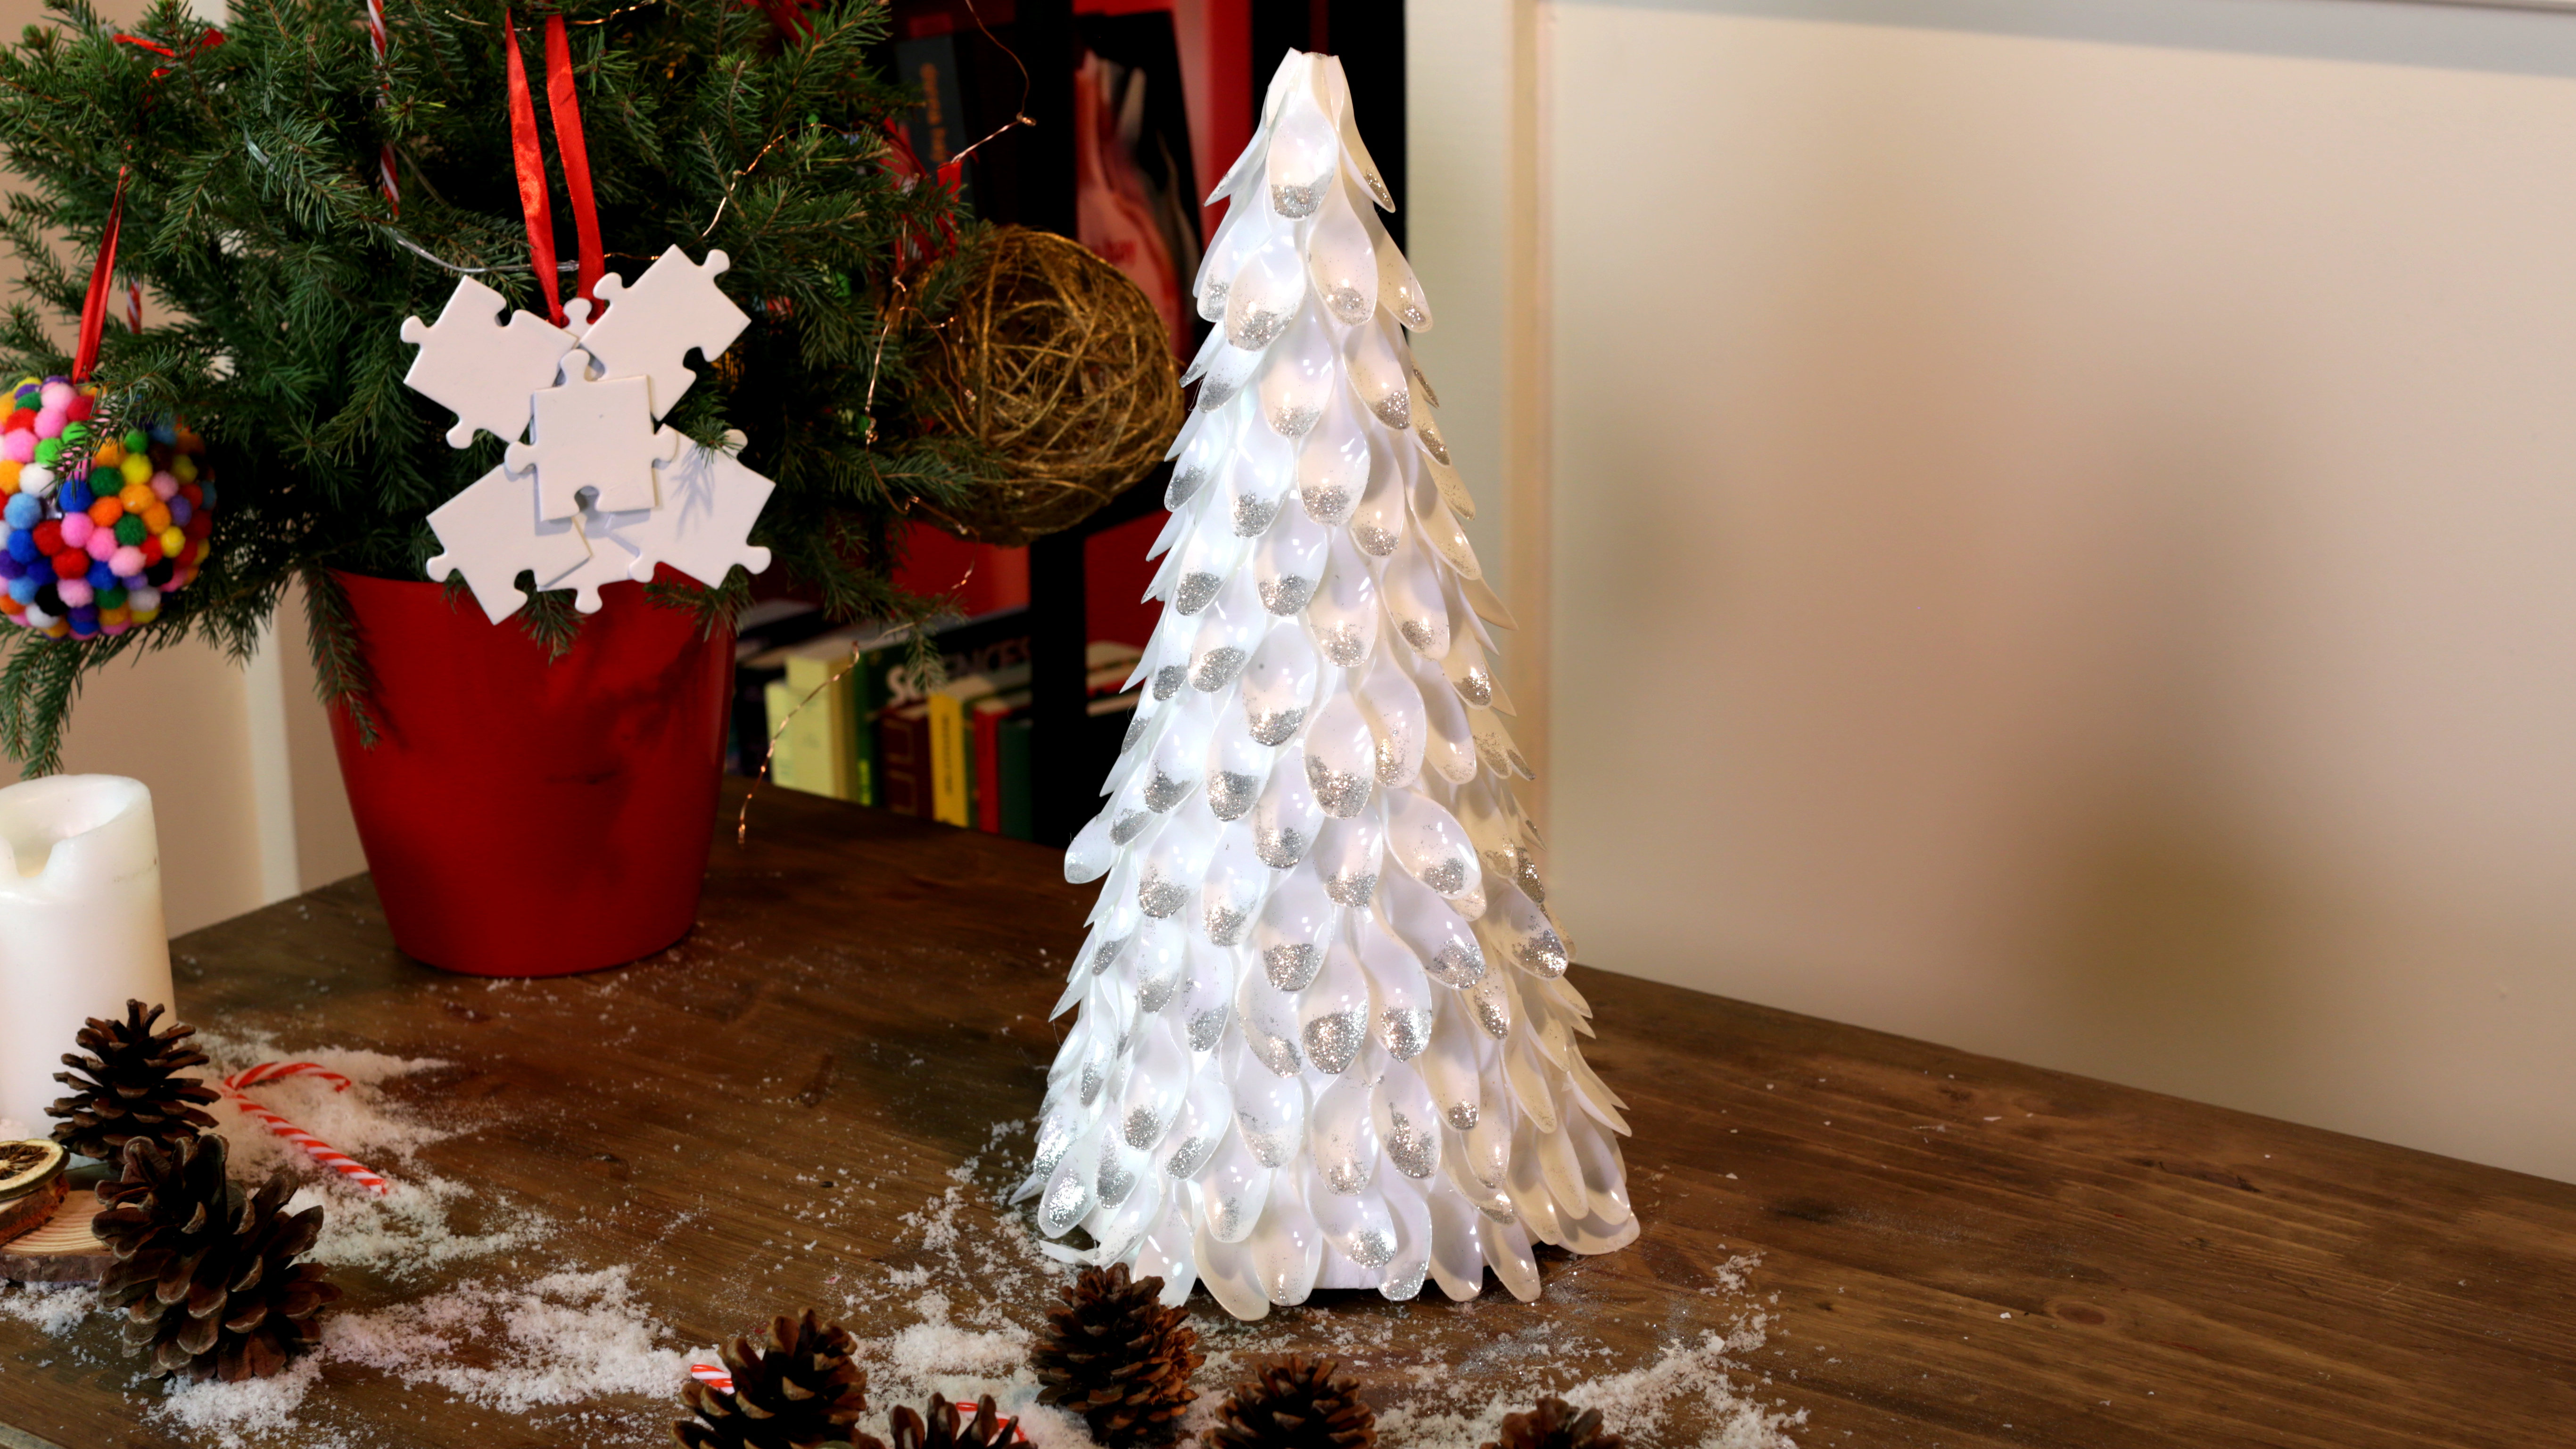 Recicle sus botellas de plástico para crear decoraciones navideñas.